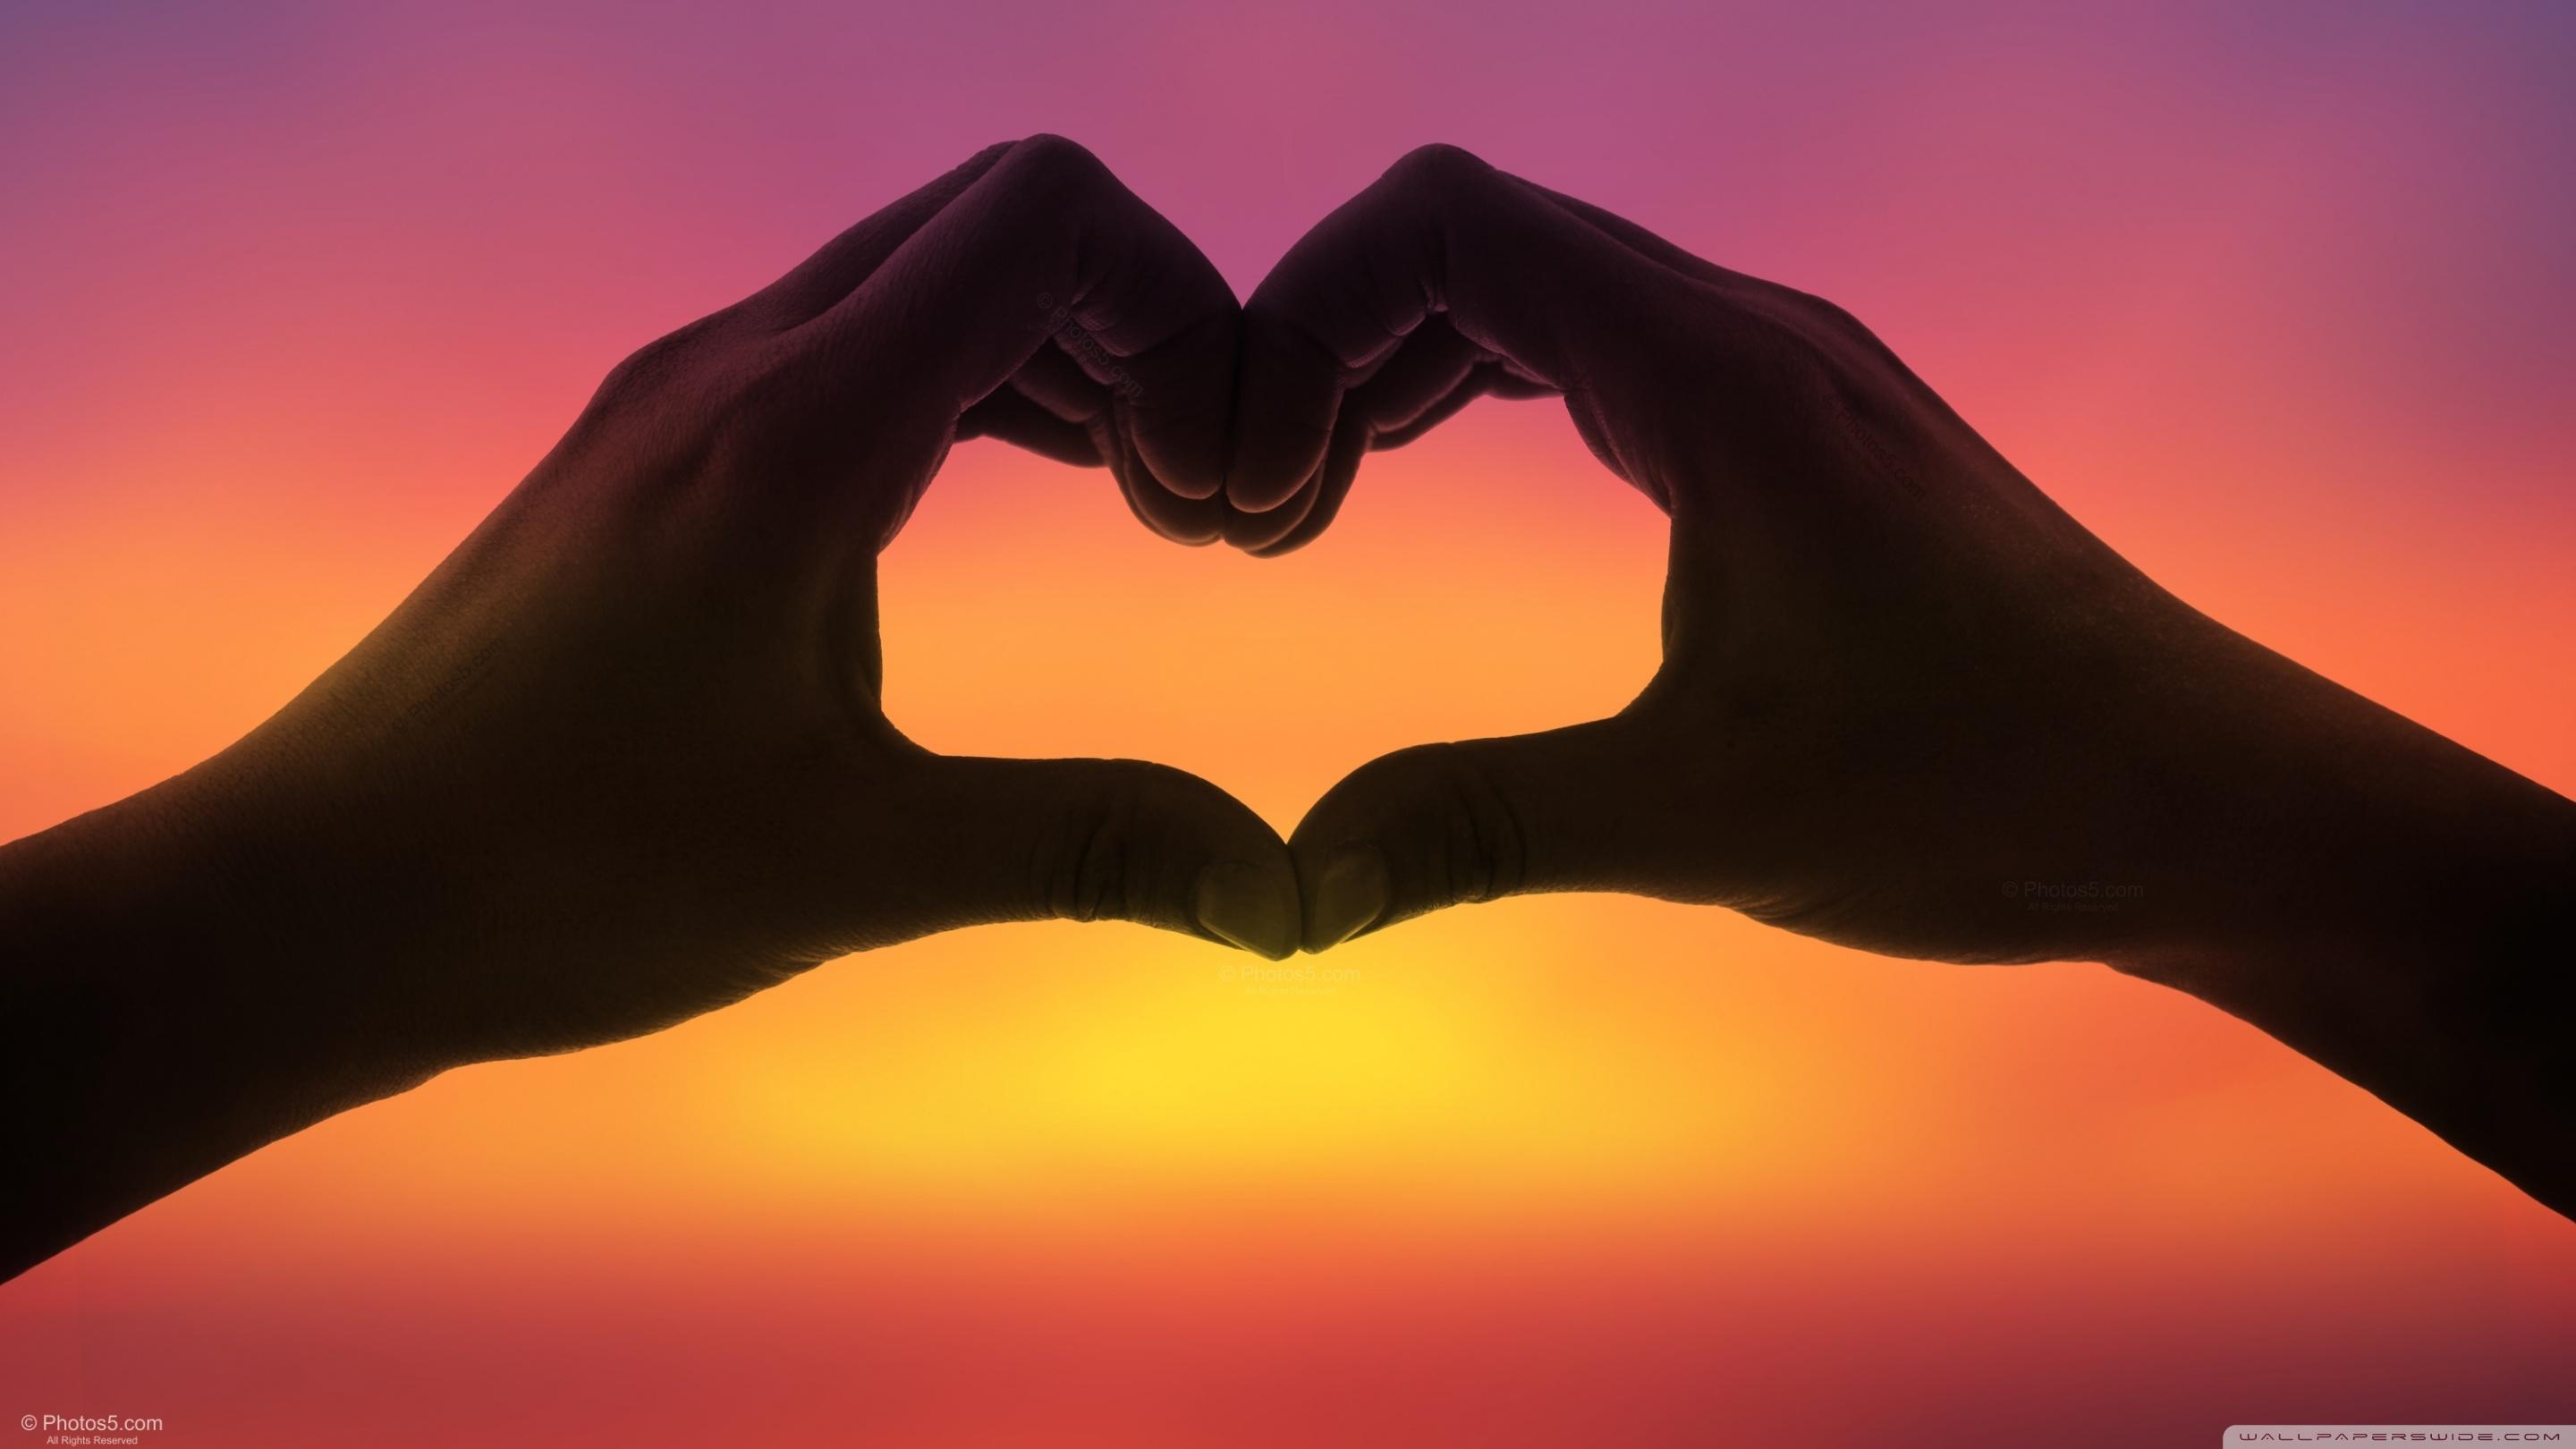 Hands Love Heart at Sunset Ultra HD Desktop Background Wallpaper